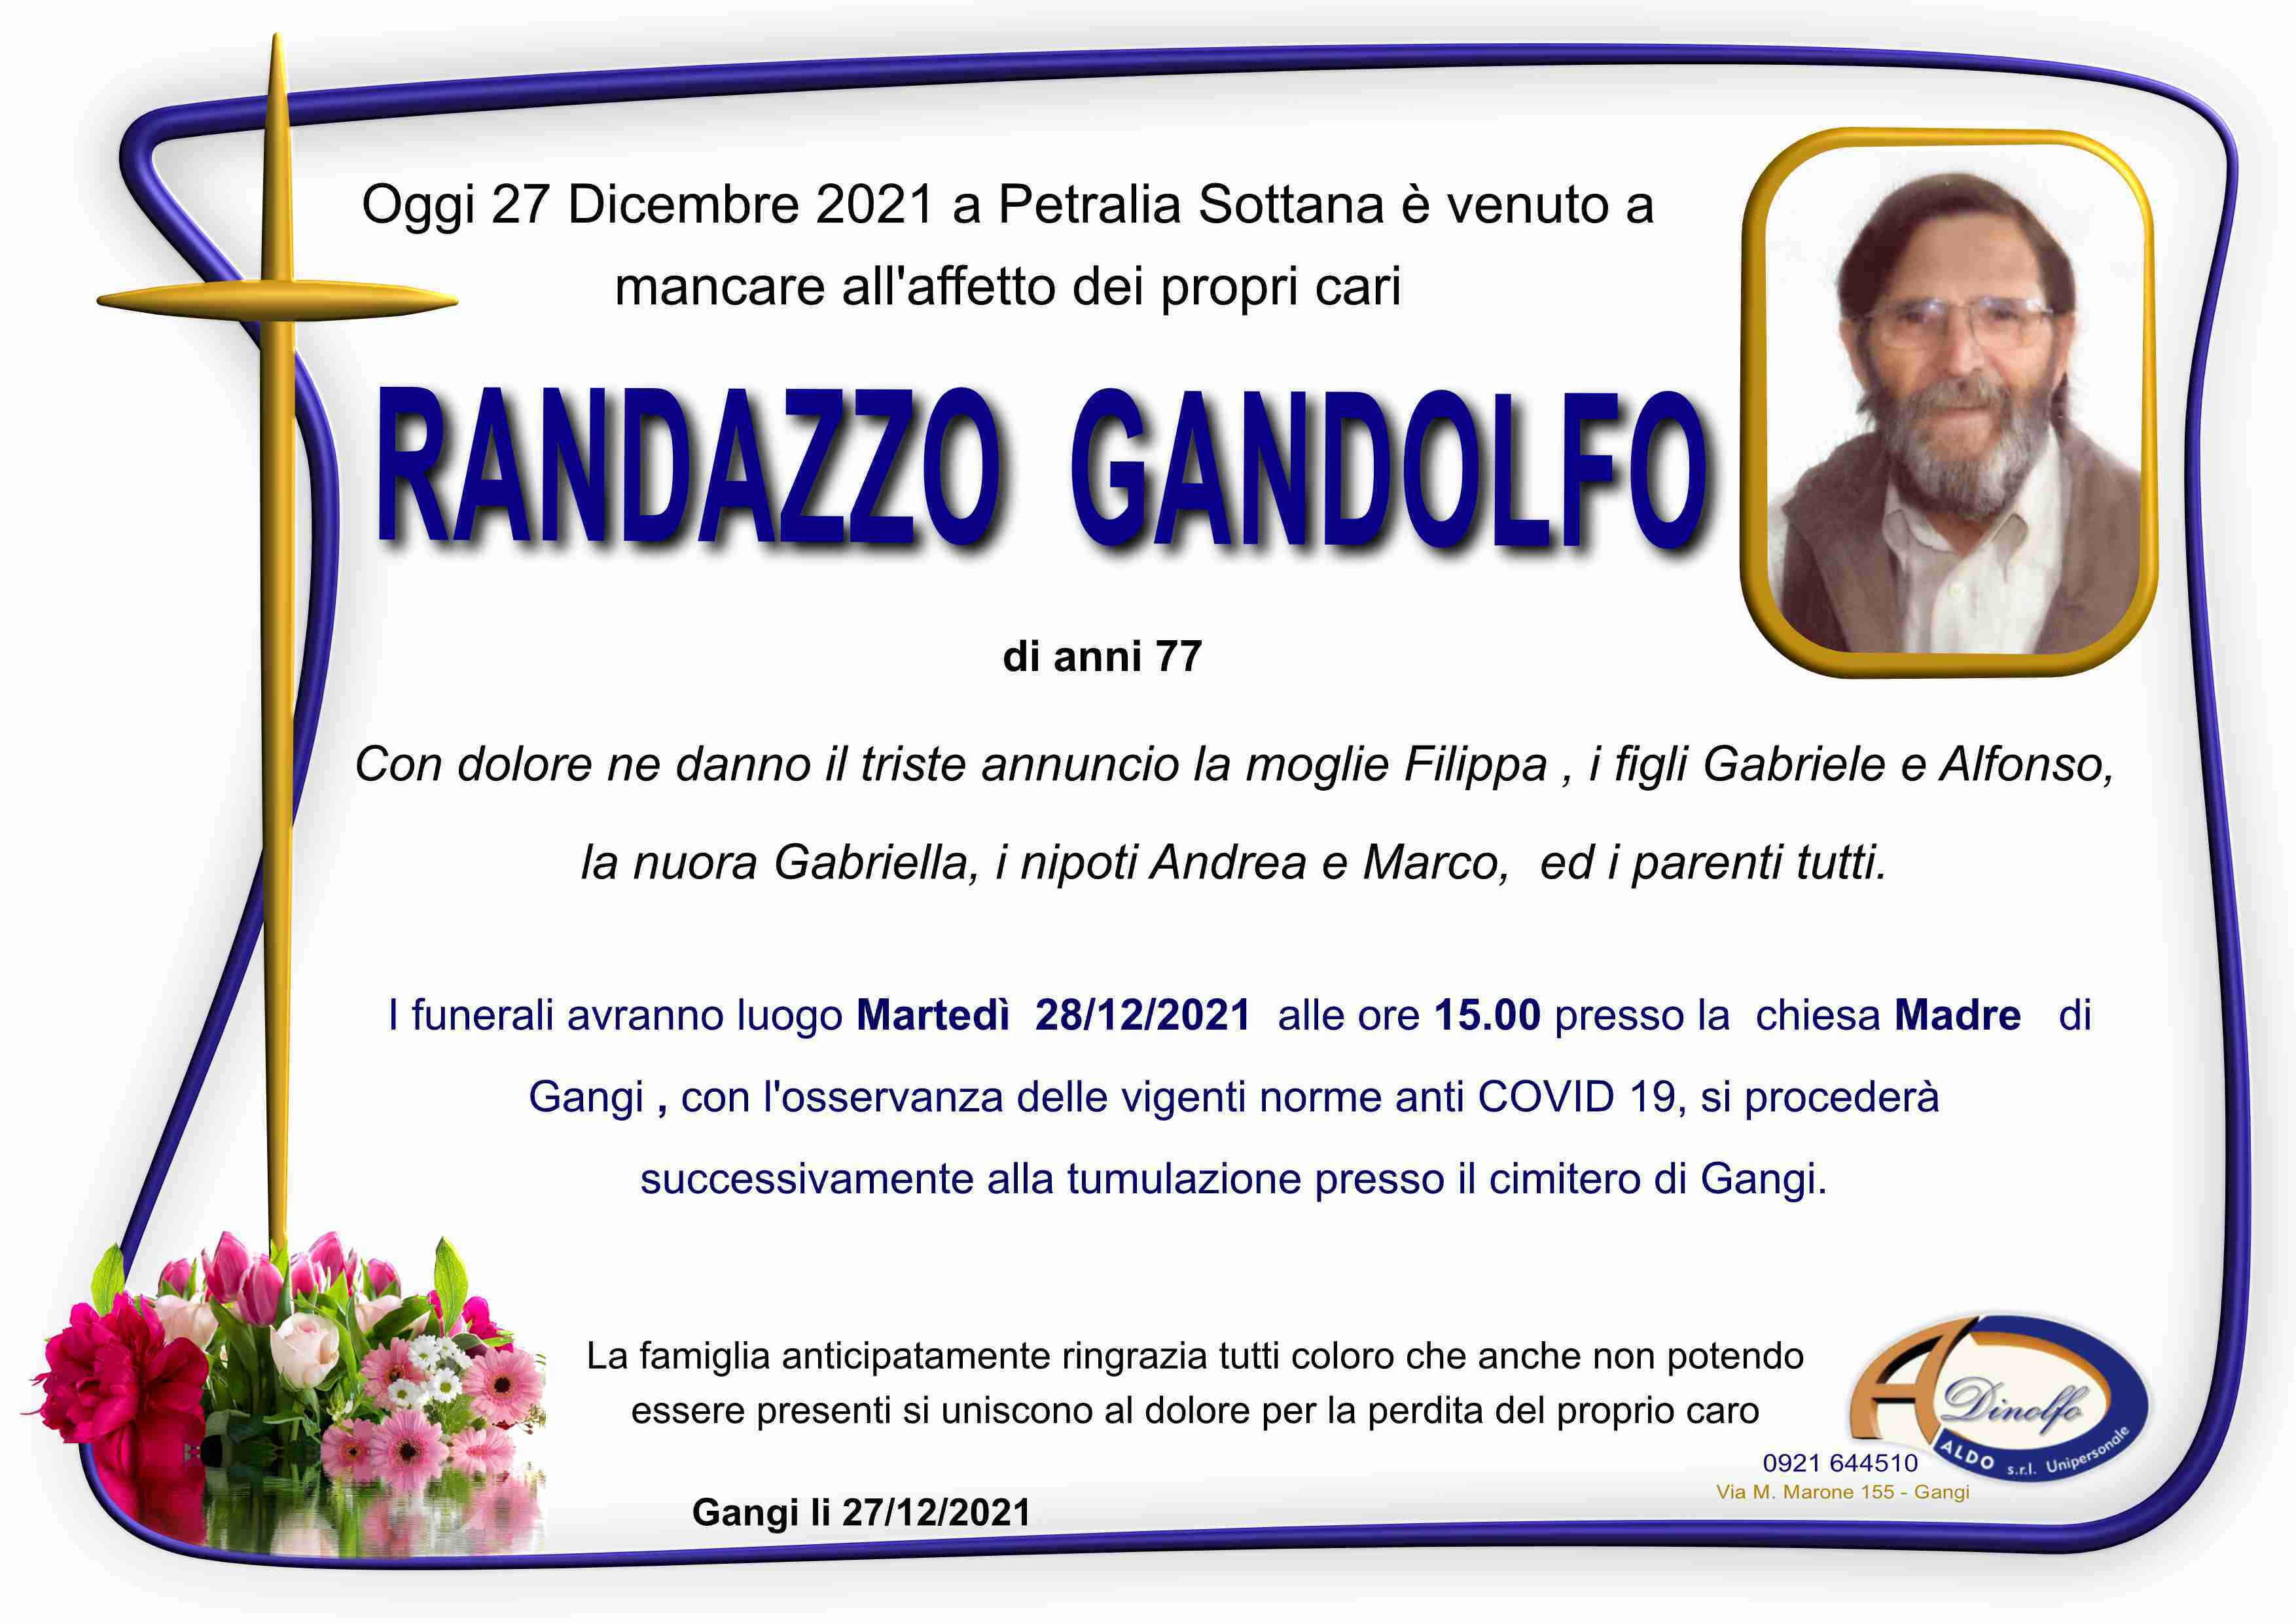 Gandolfo Randazzo